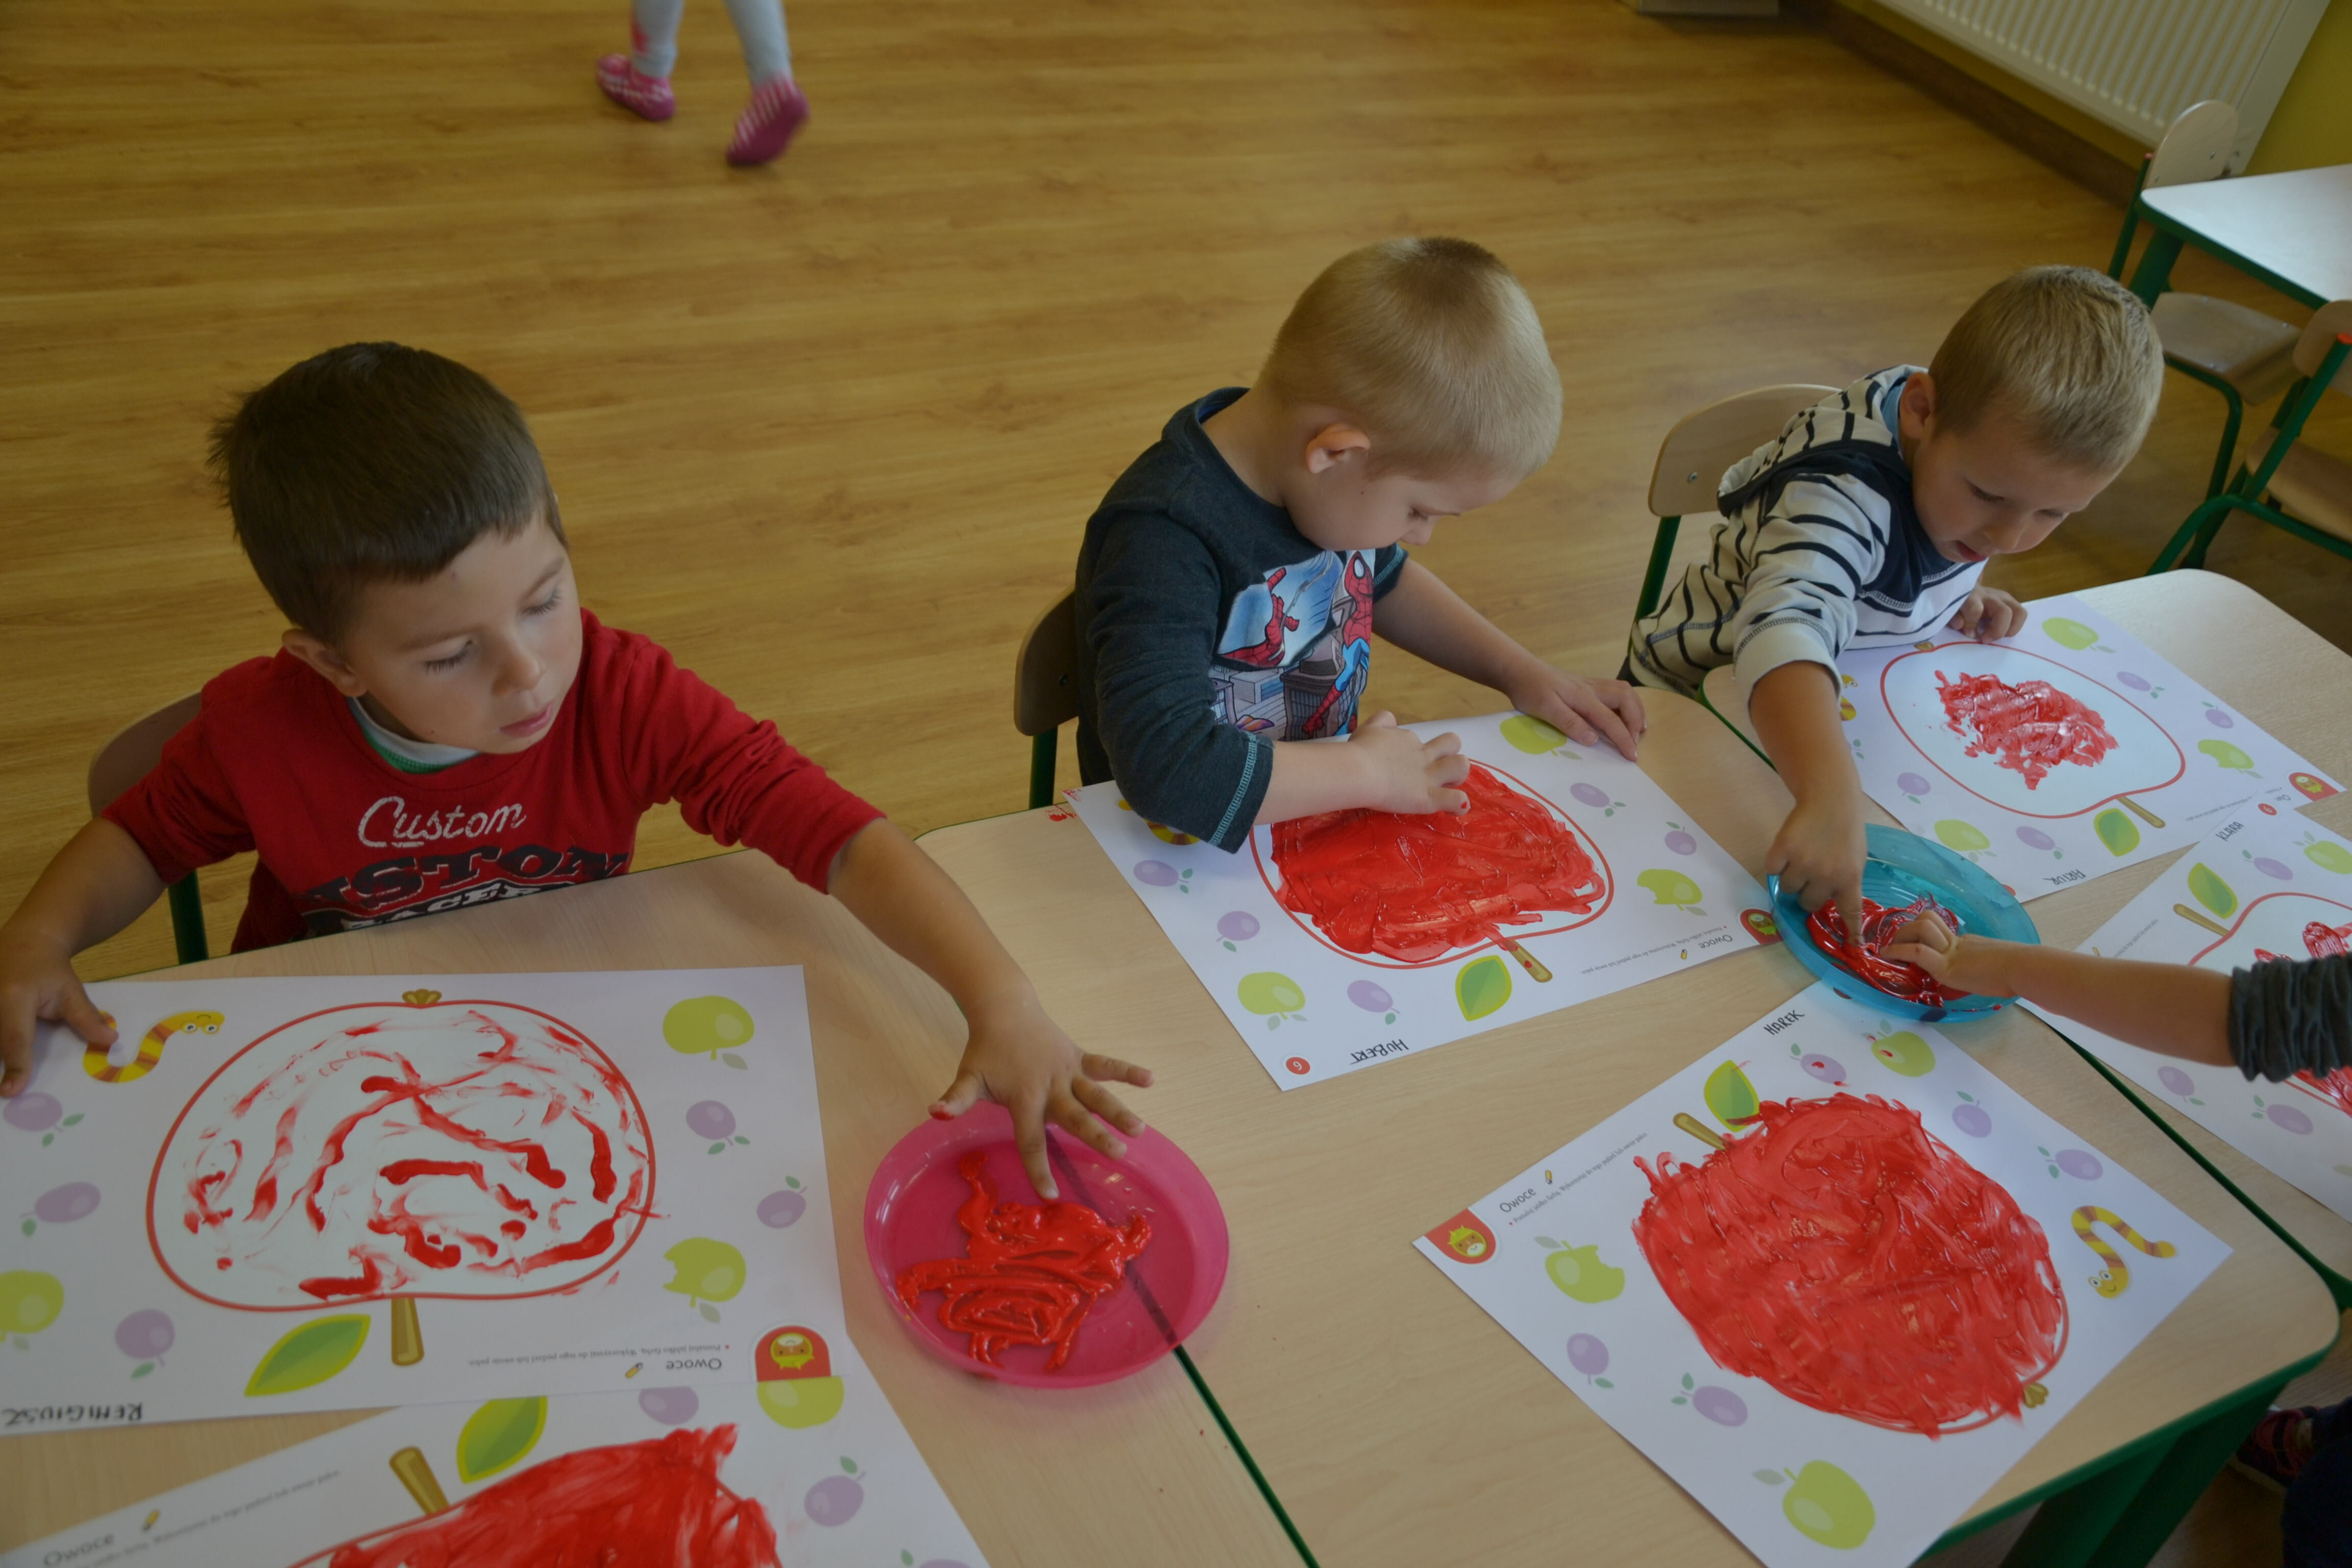 Trójka dzieci siedzi przy stole w przedszkolu, tworząc czerwone malunki palcami na kartkach. W pokoju widać zabawki i inne dzieci.